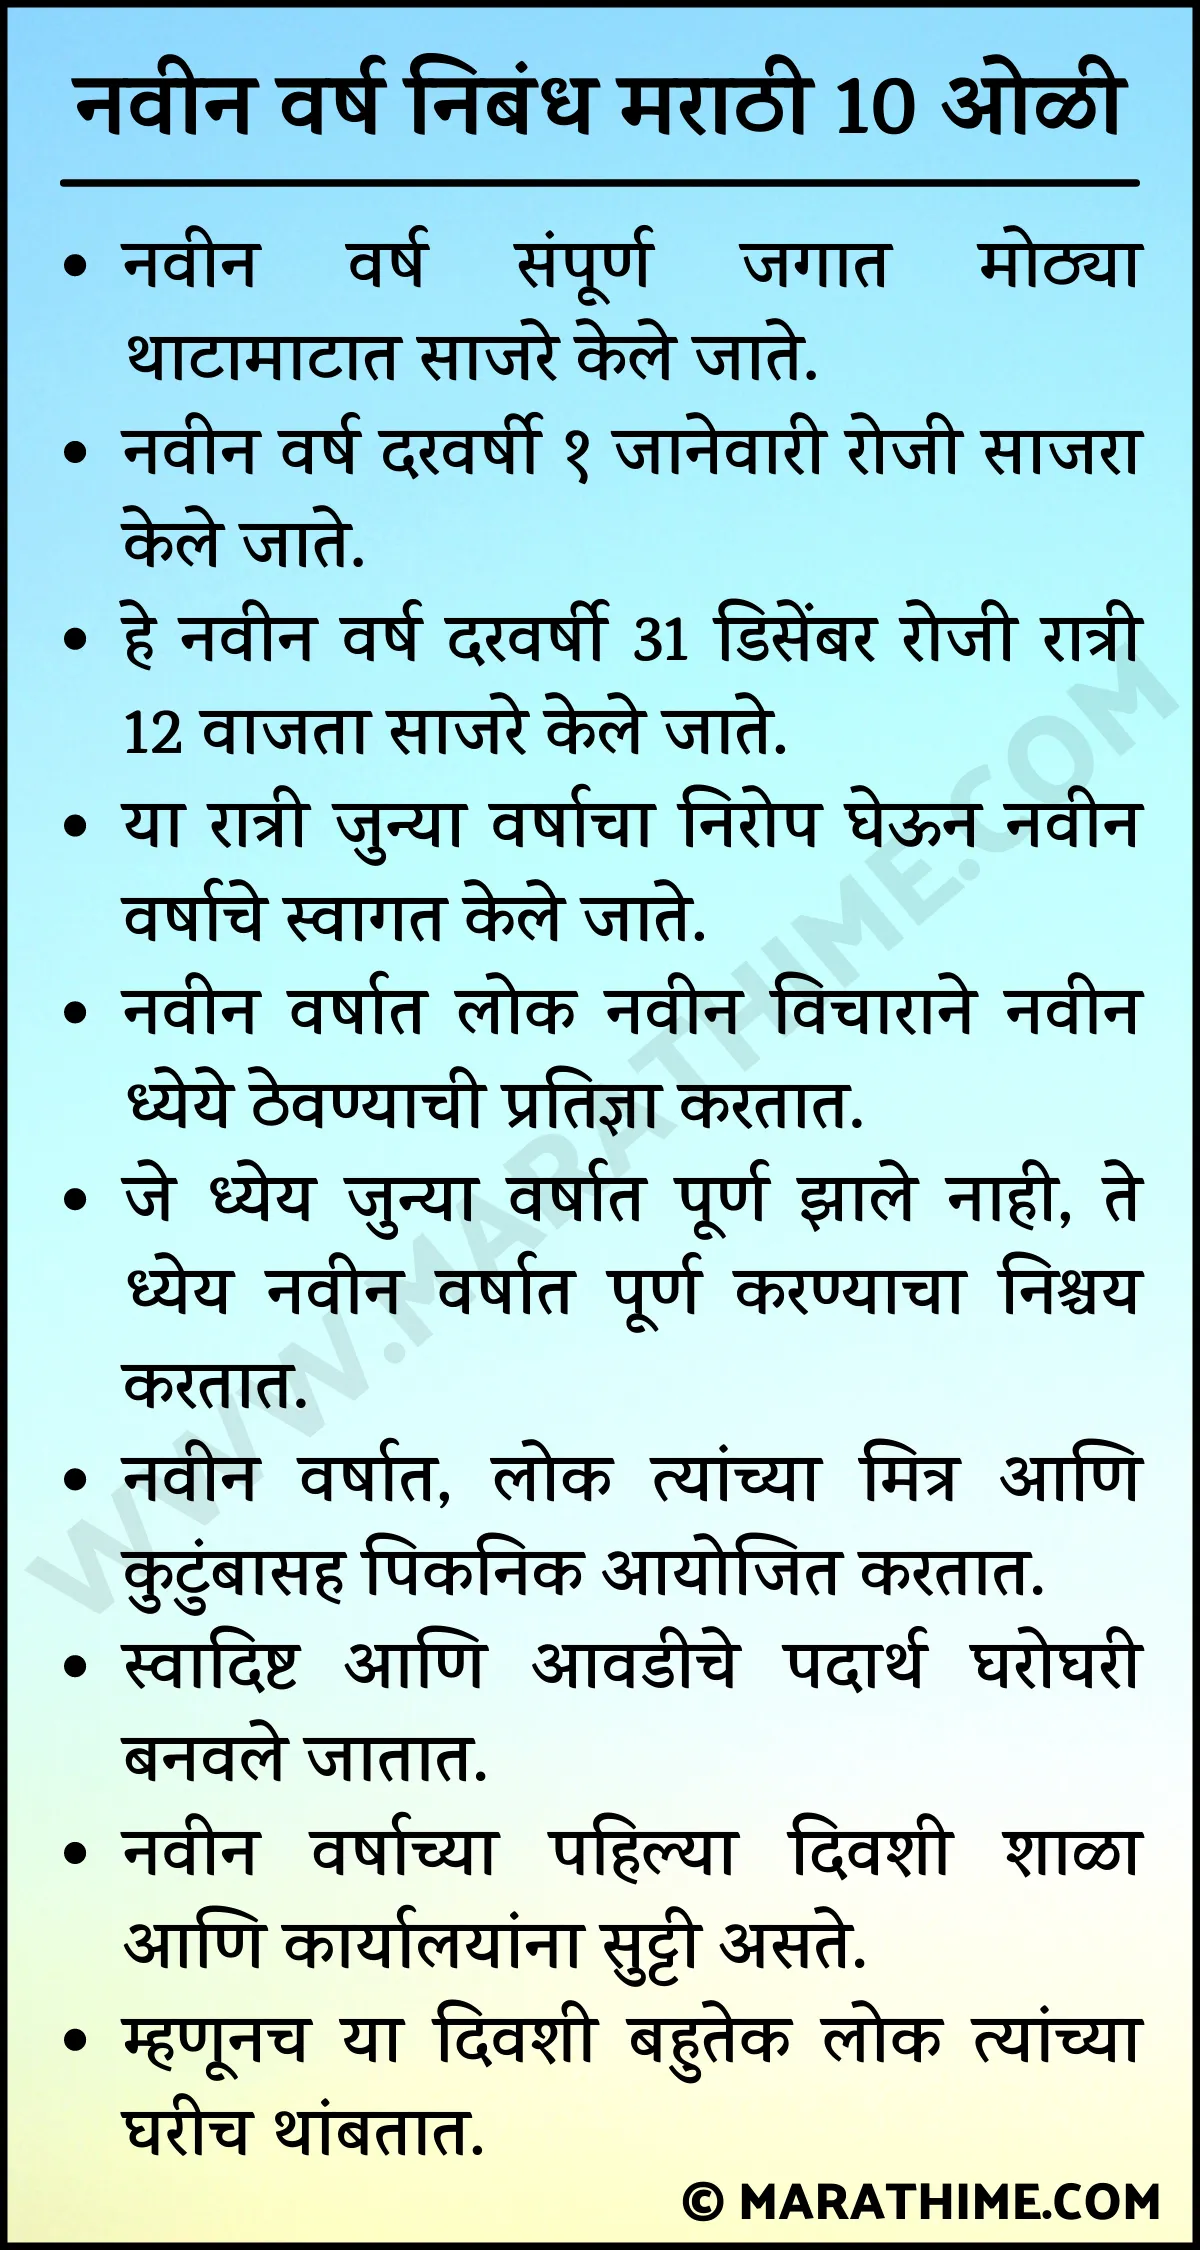 नवीन वर्ष निबंध मराठी 10 ओळी-10 Lines on New Year in Marathi